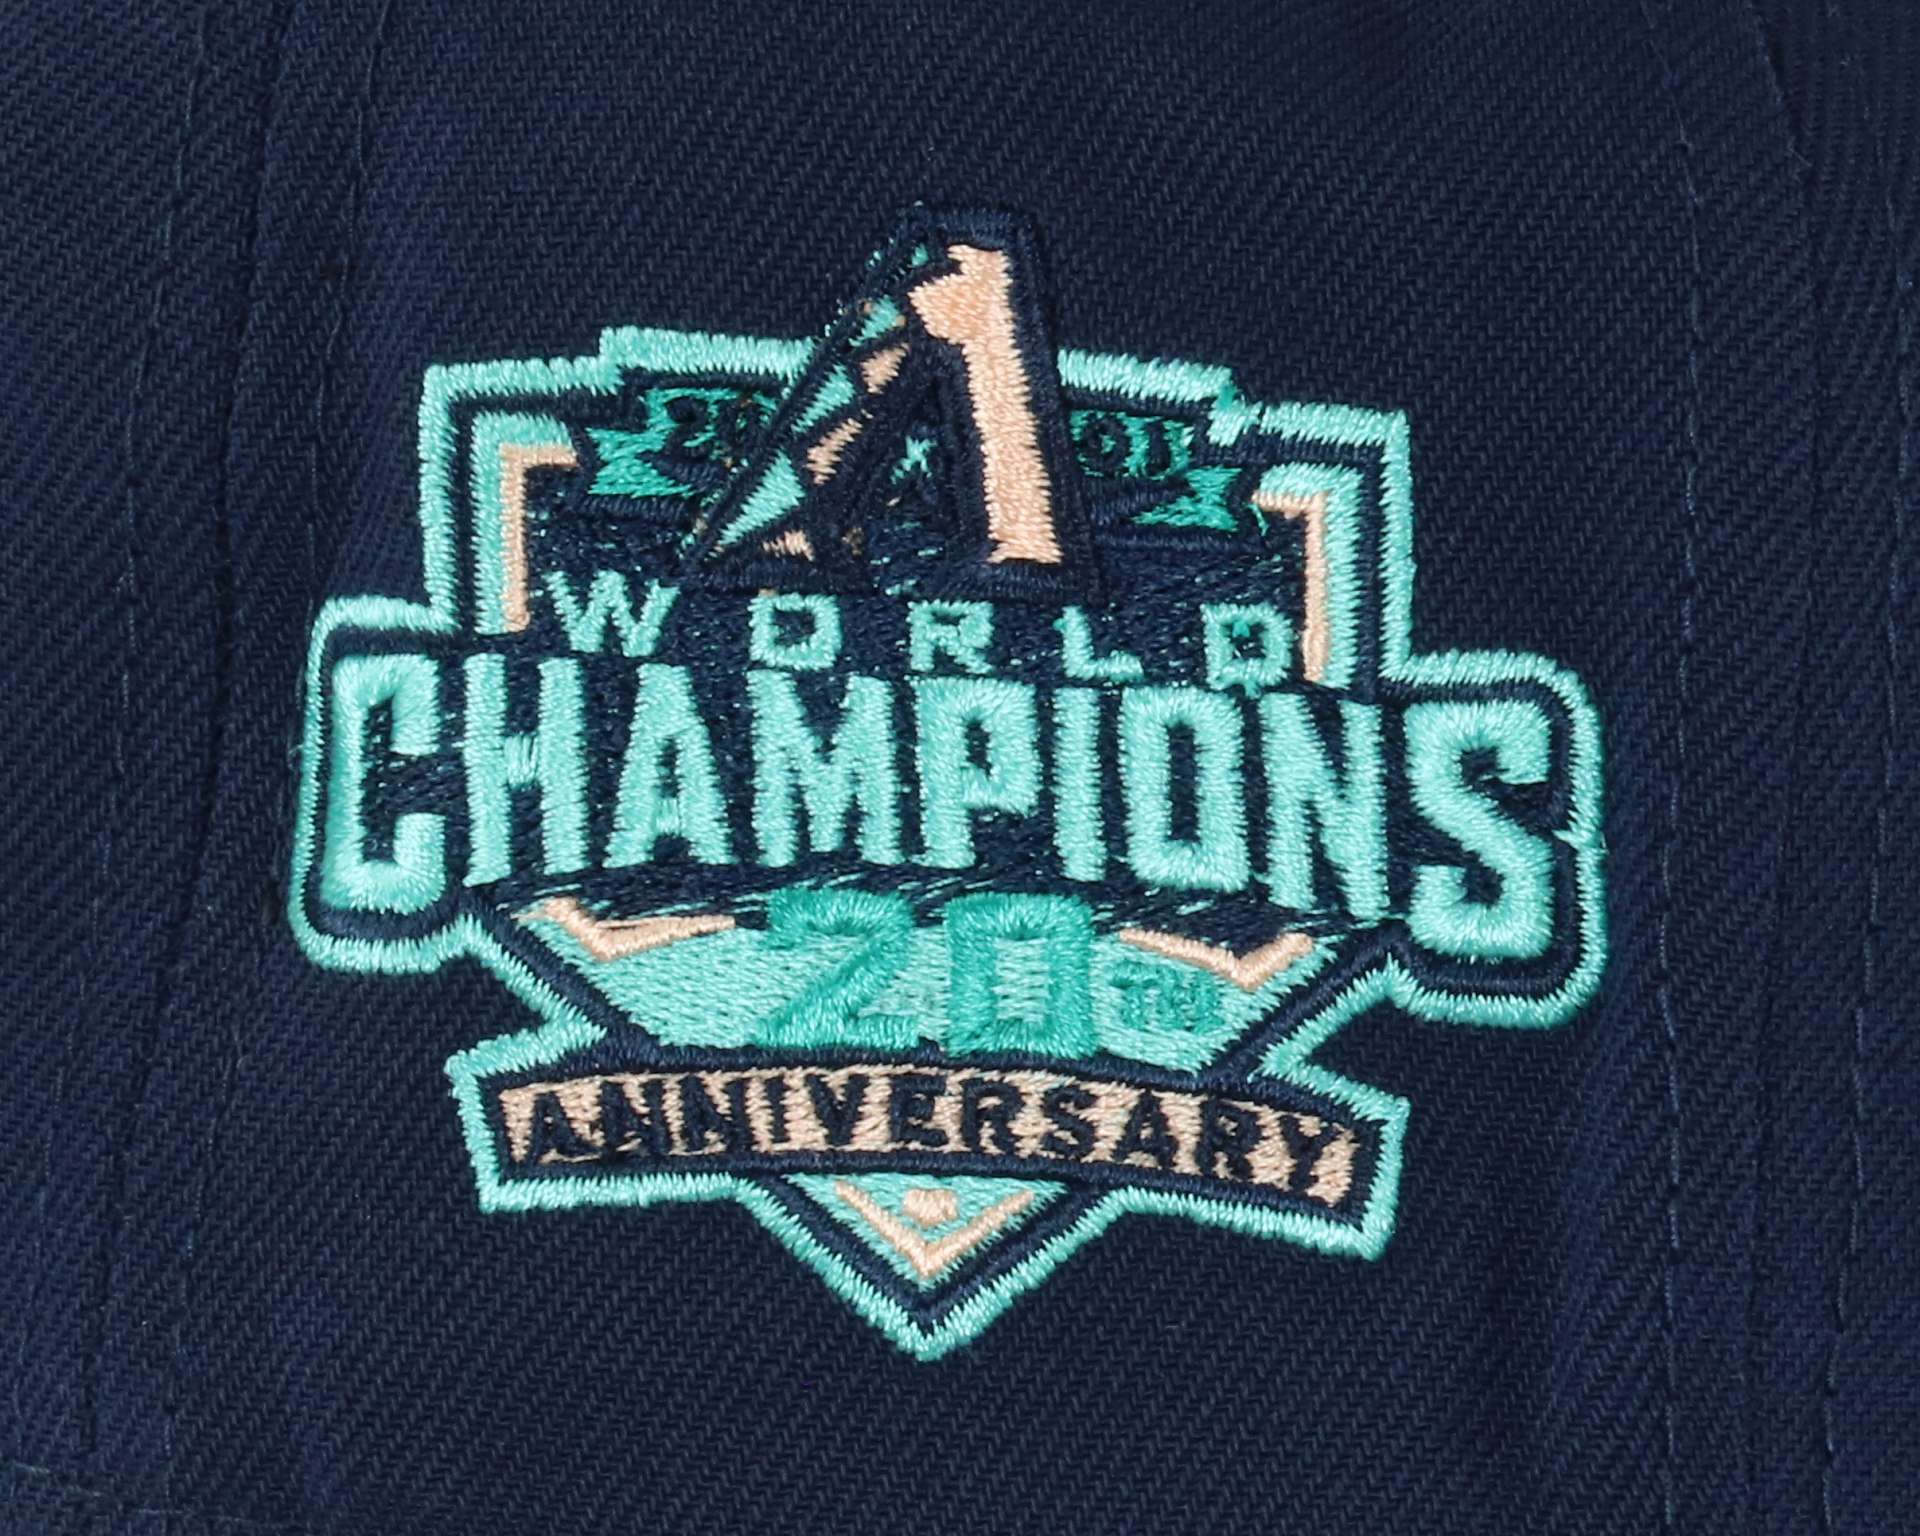 Arizona Diamondbacks 20th Anniversary World Champions MLB Navy 59Fifty Basecap New Era